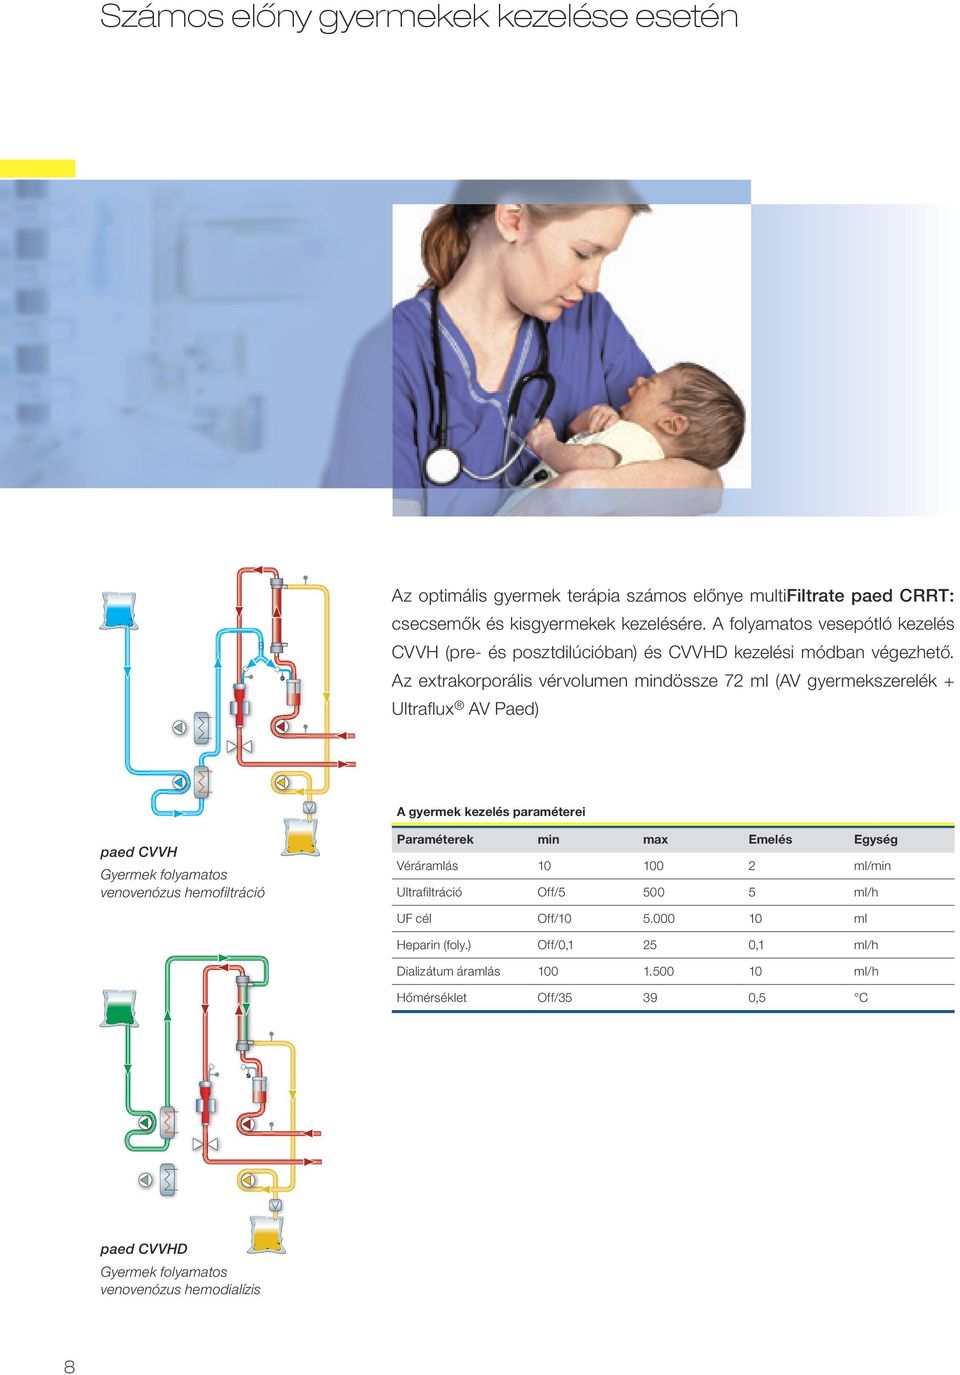 Az extrakorporális vérvolumen mindössze 72 ml (AV gyermekszerelék + Ultraflux AV Paed) A gyermek kezelés paraméterei paed CVVH Gyermek folyamatos venovenózus hemofiltráció